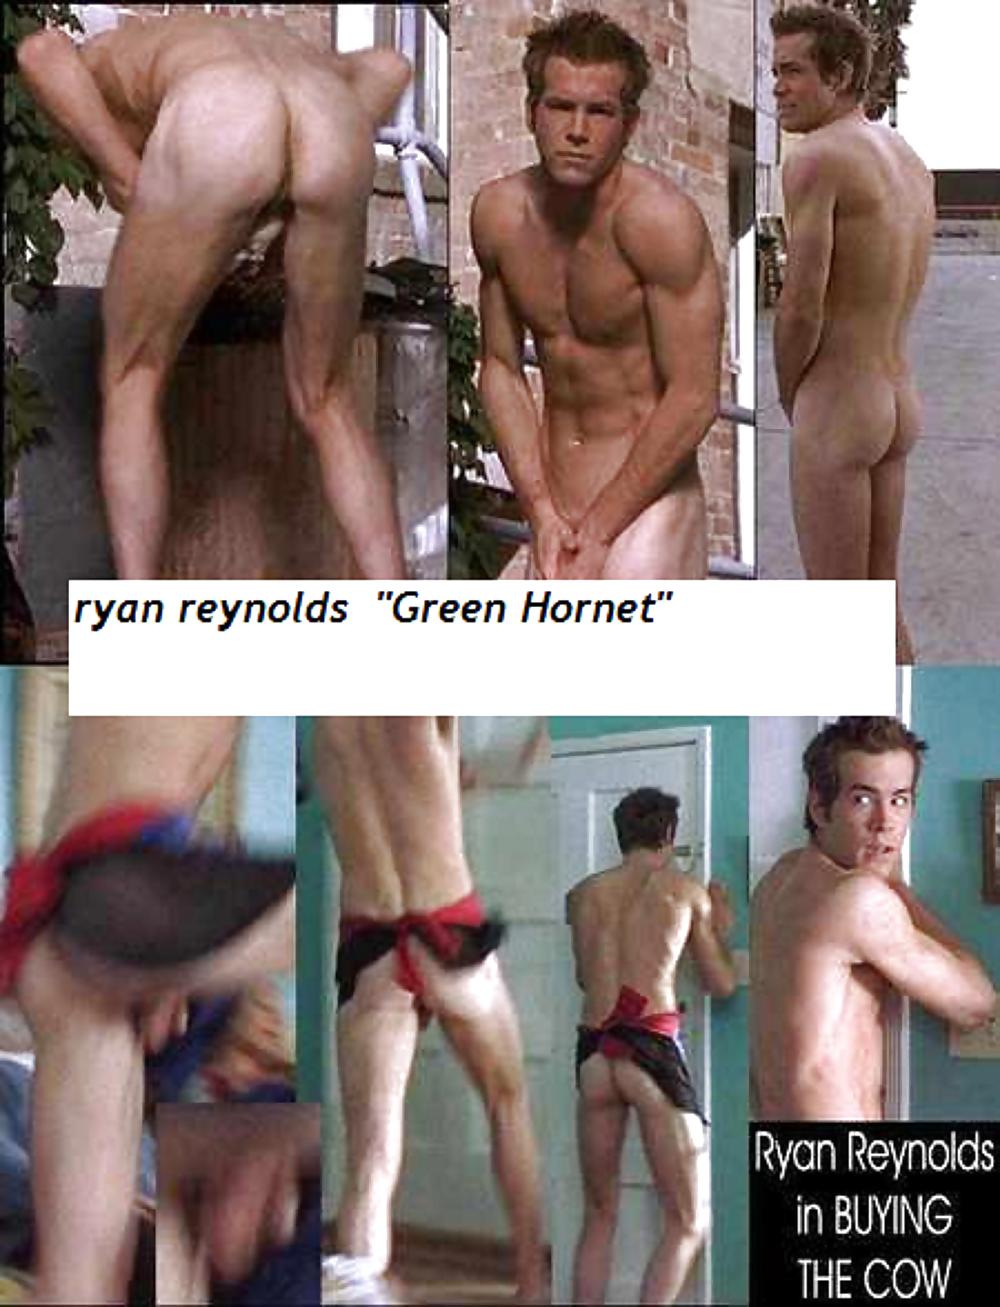 Ryan reynolds nudes leaked